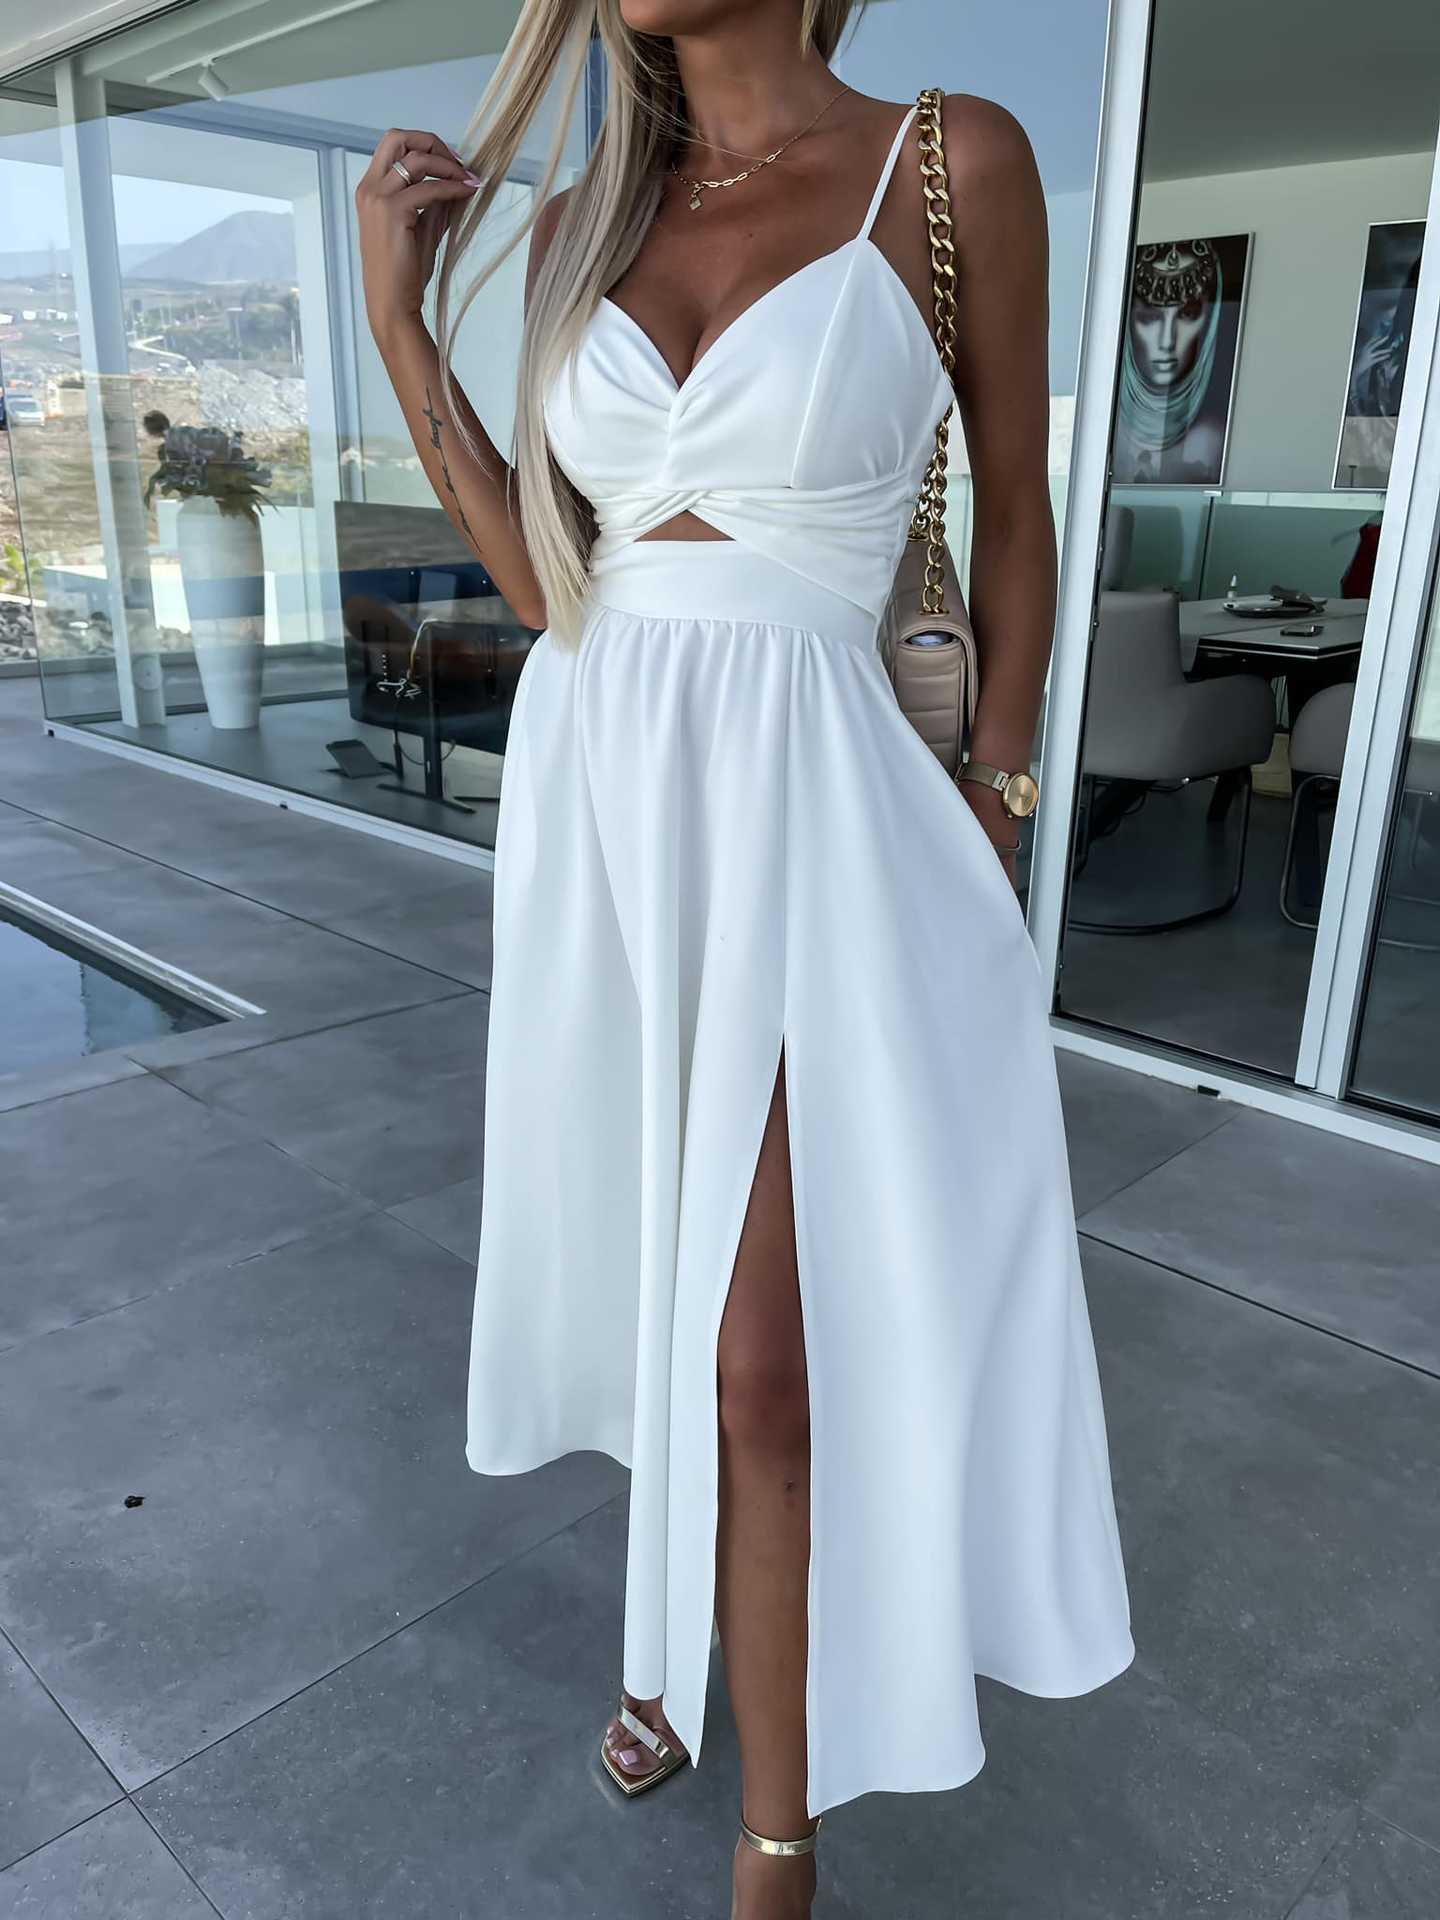 Elegant Midriff Baring Summer Dresses-Dresses-White-S-Free Shipping Leatheretro